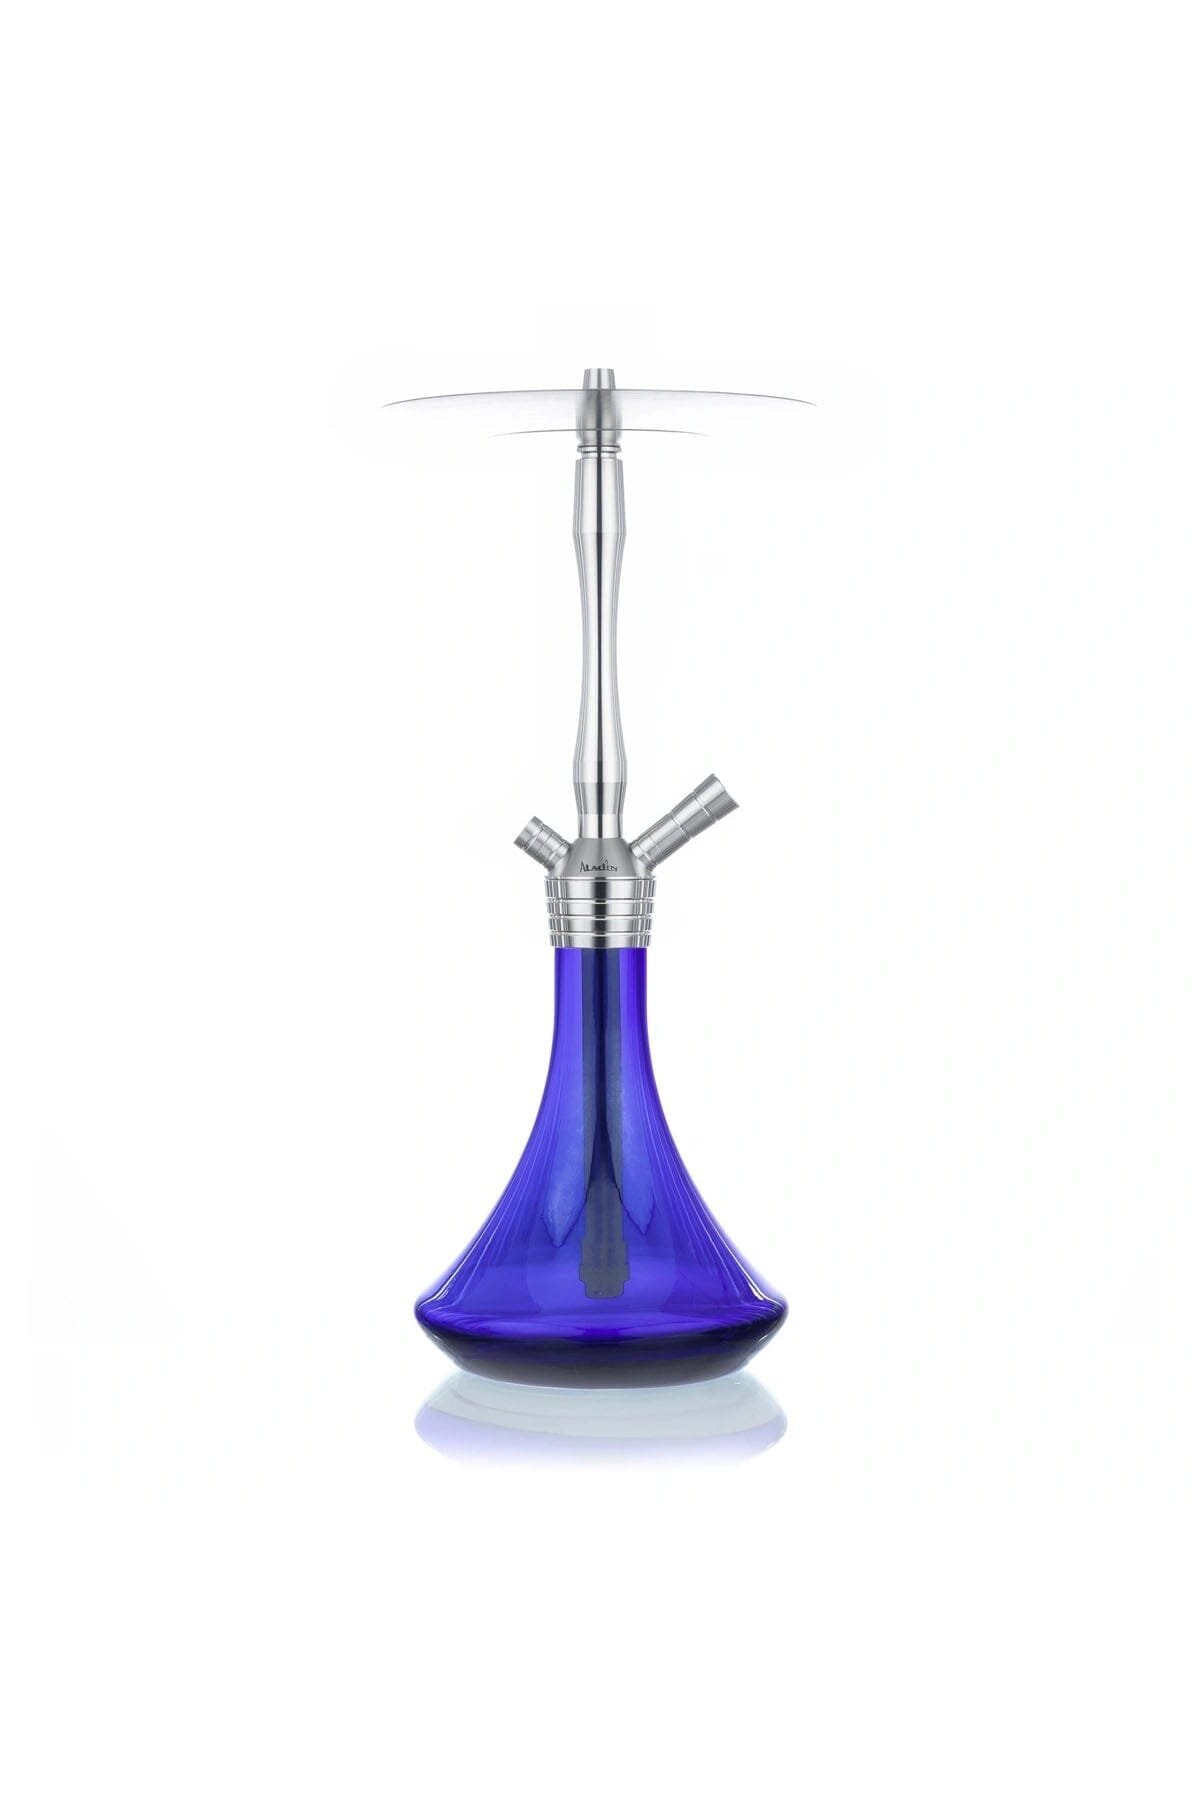 Aladin MVP 460 Gastro Model 1 Glas 1 - Shiny Blue